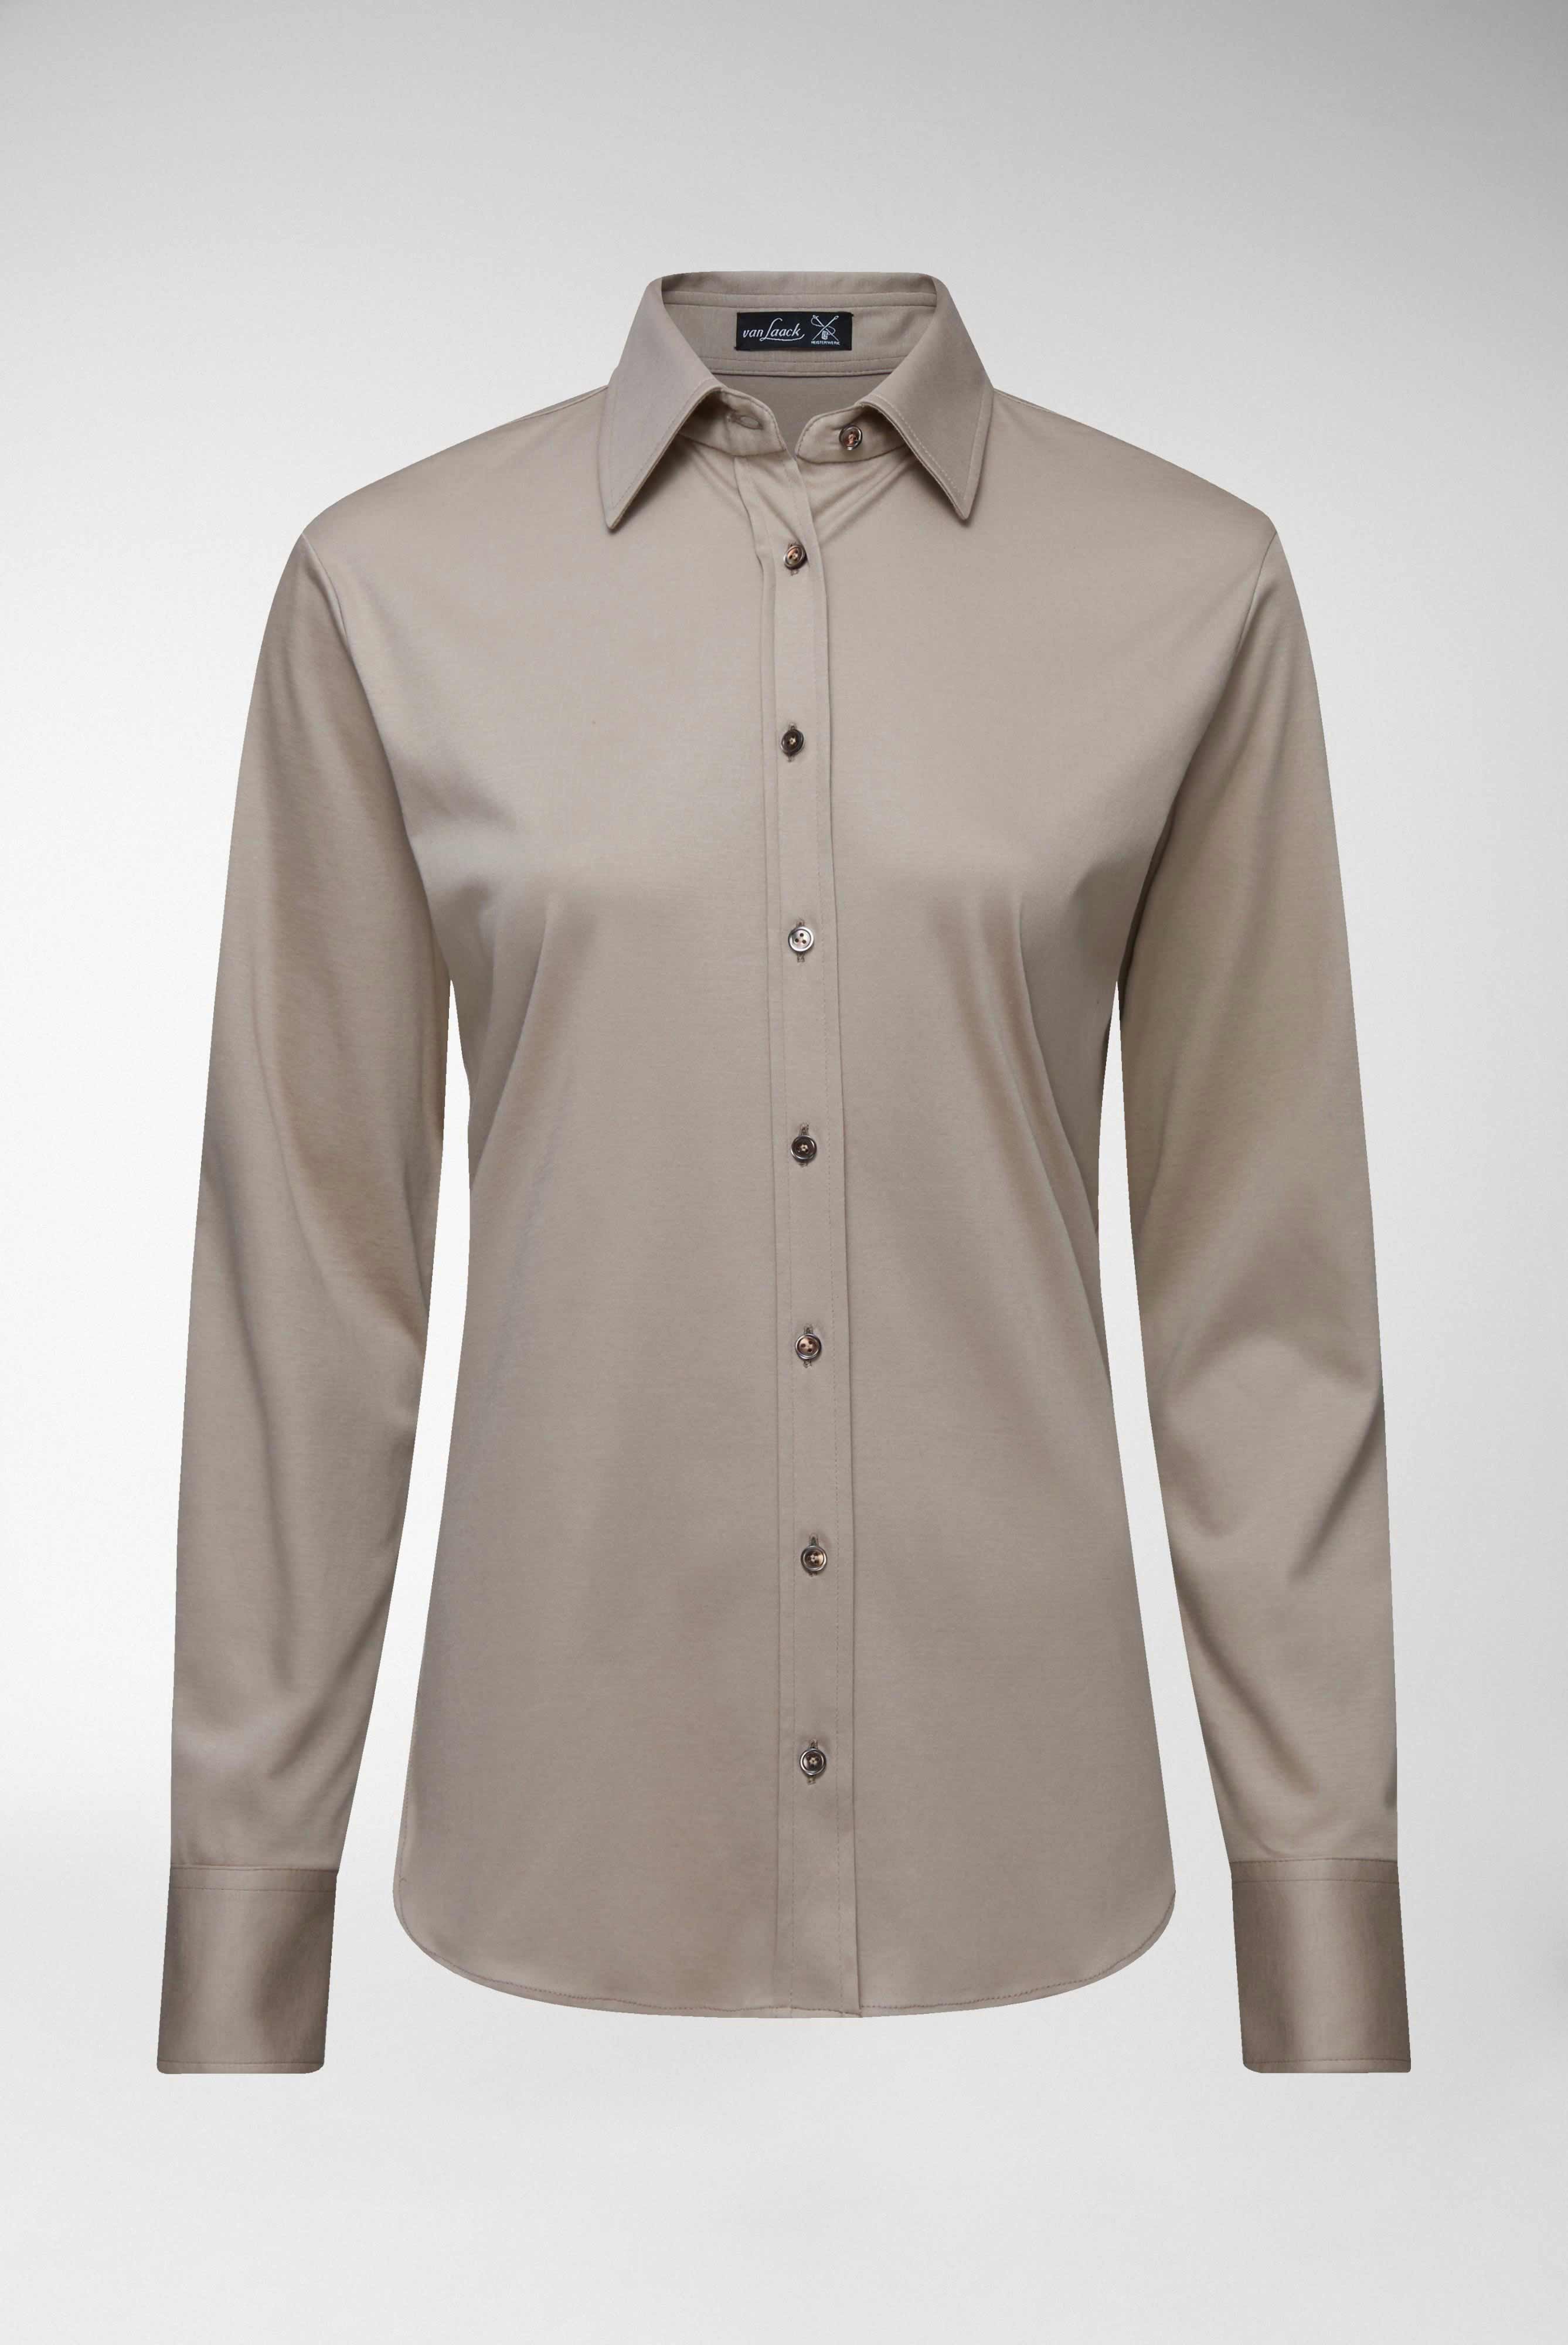 Casual Blusen+Taillierte Jersey Hemdbluse aus Schweizer Baumwolle+05.603Y..180031.140.40